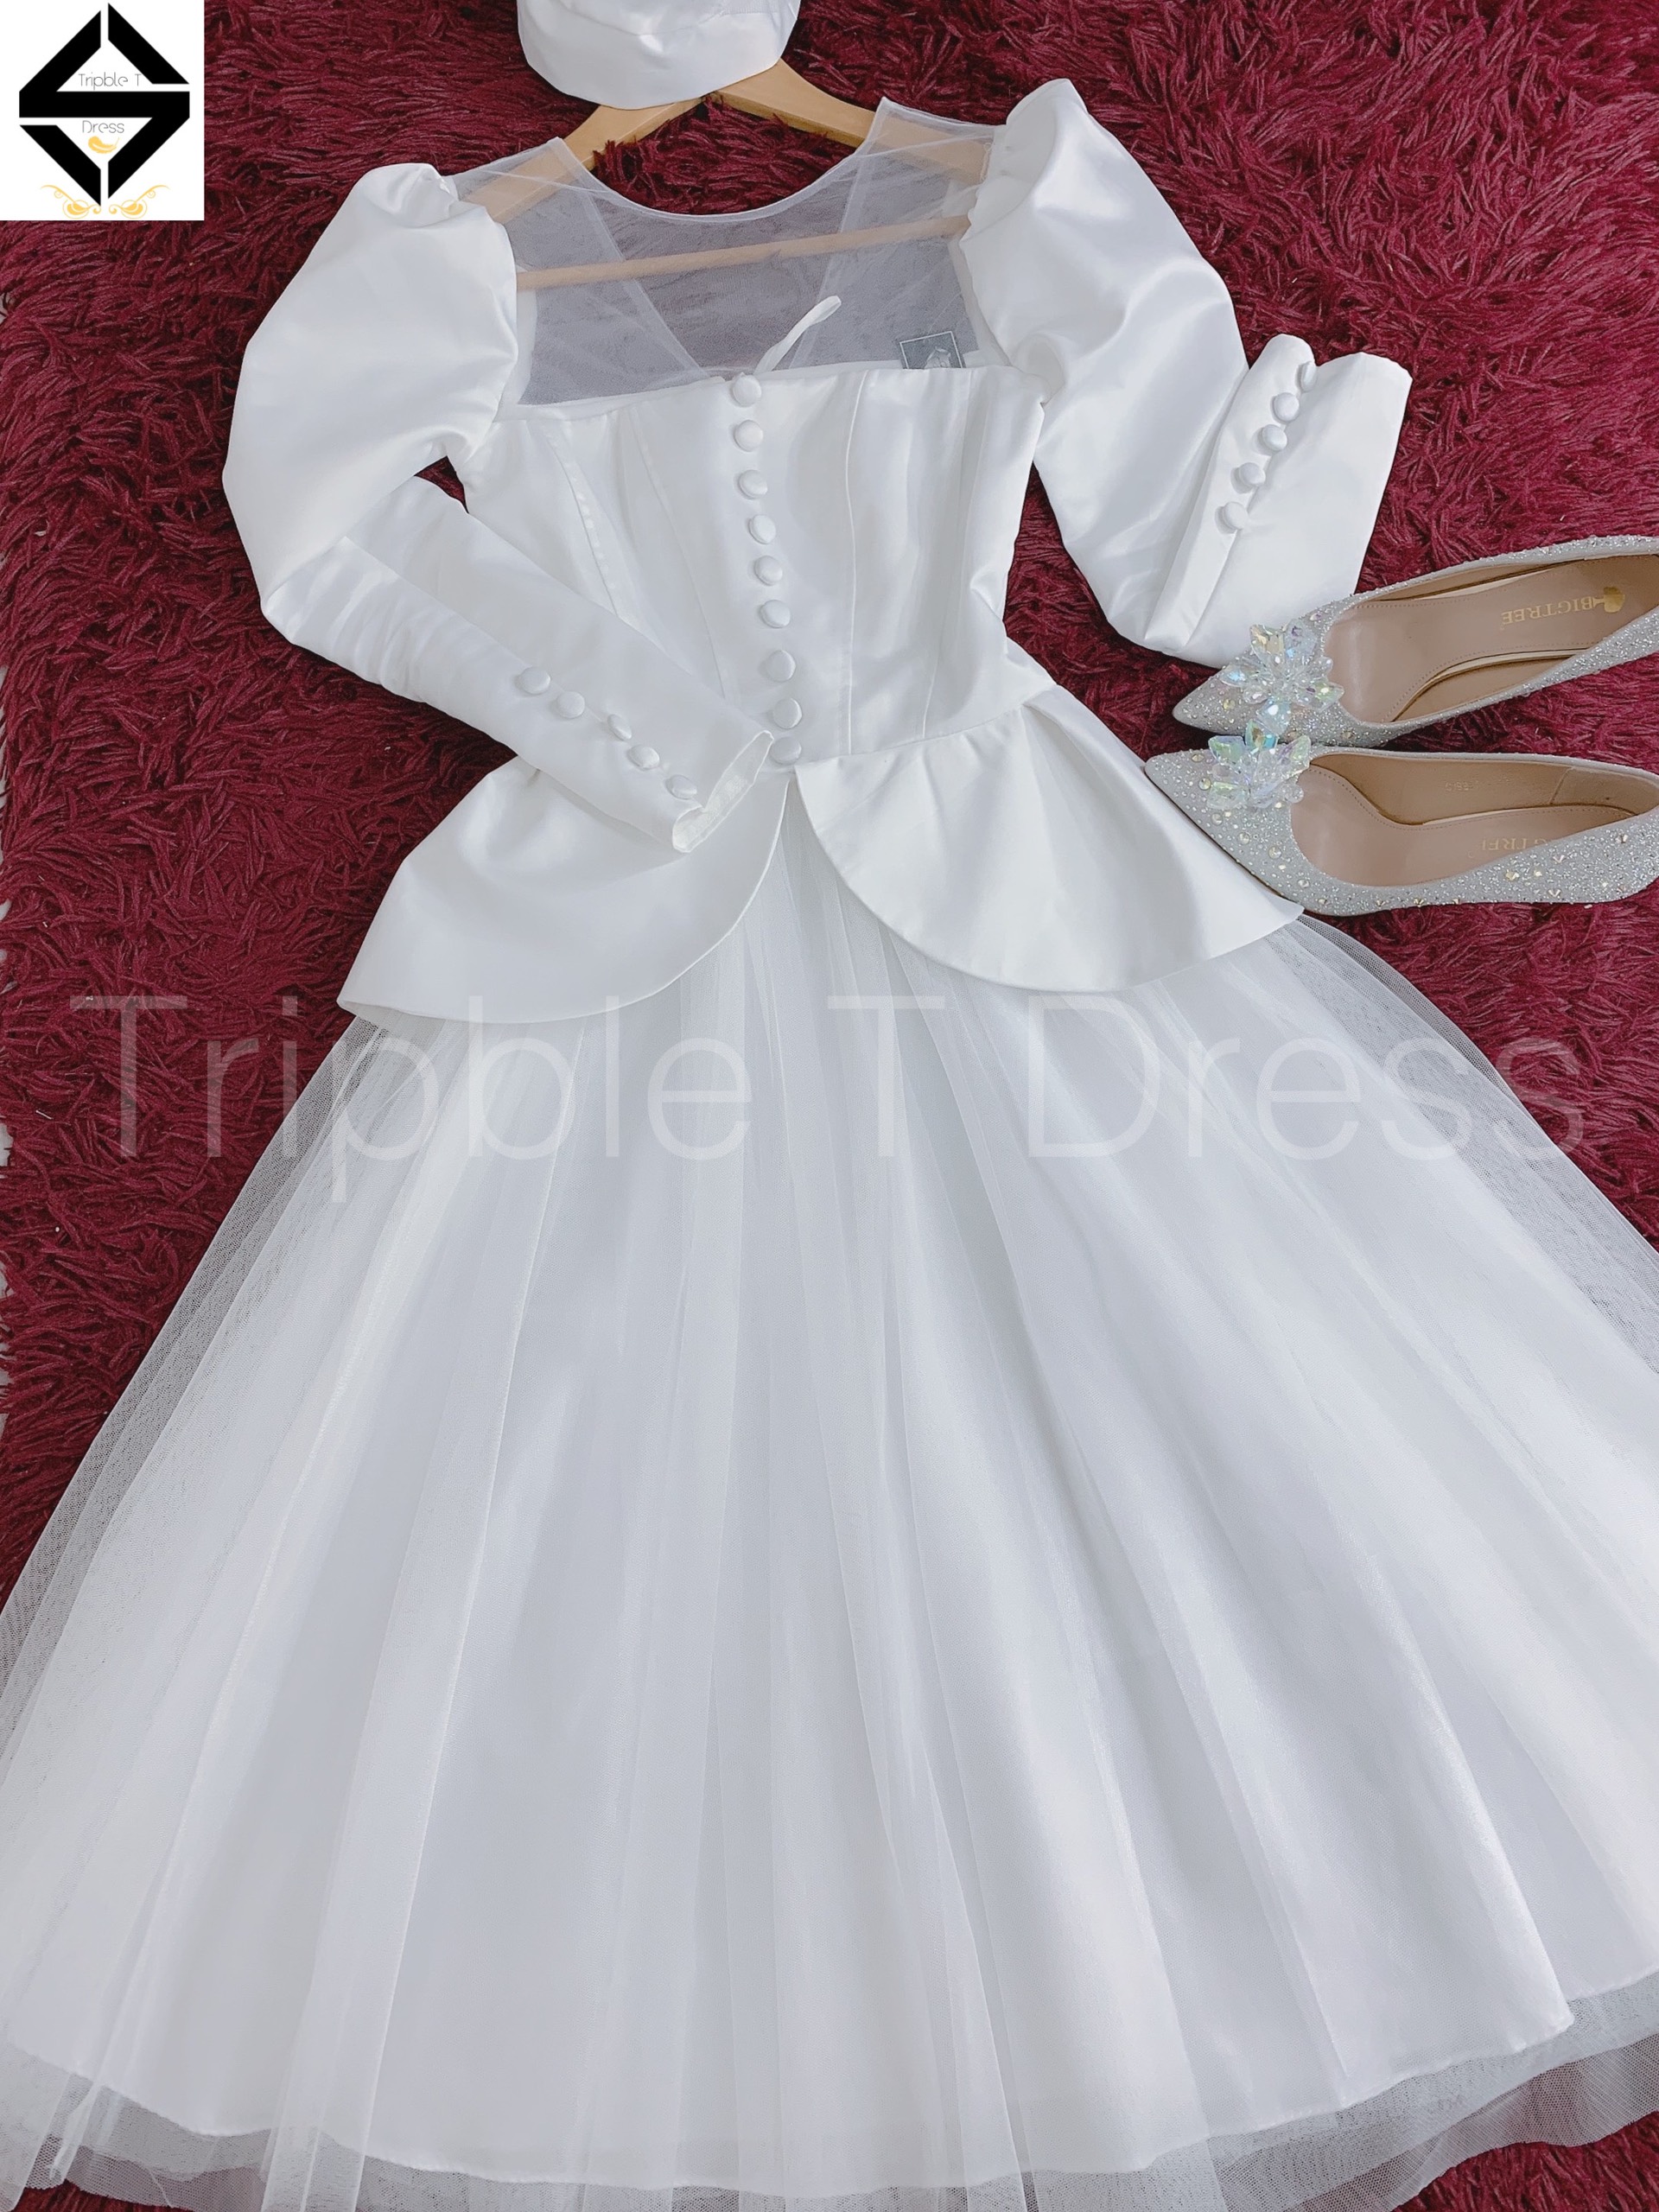 Đầm xoè phong cách quý tộc sang trọng kèm nón đội đầu TRIPBLE T DRESS - size S/M/L - MS174Y